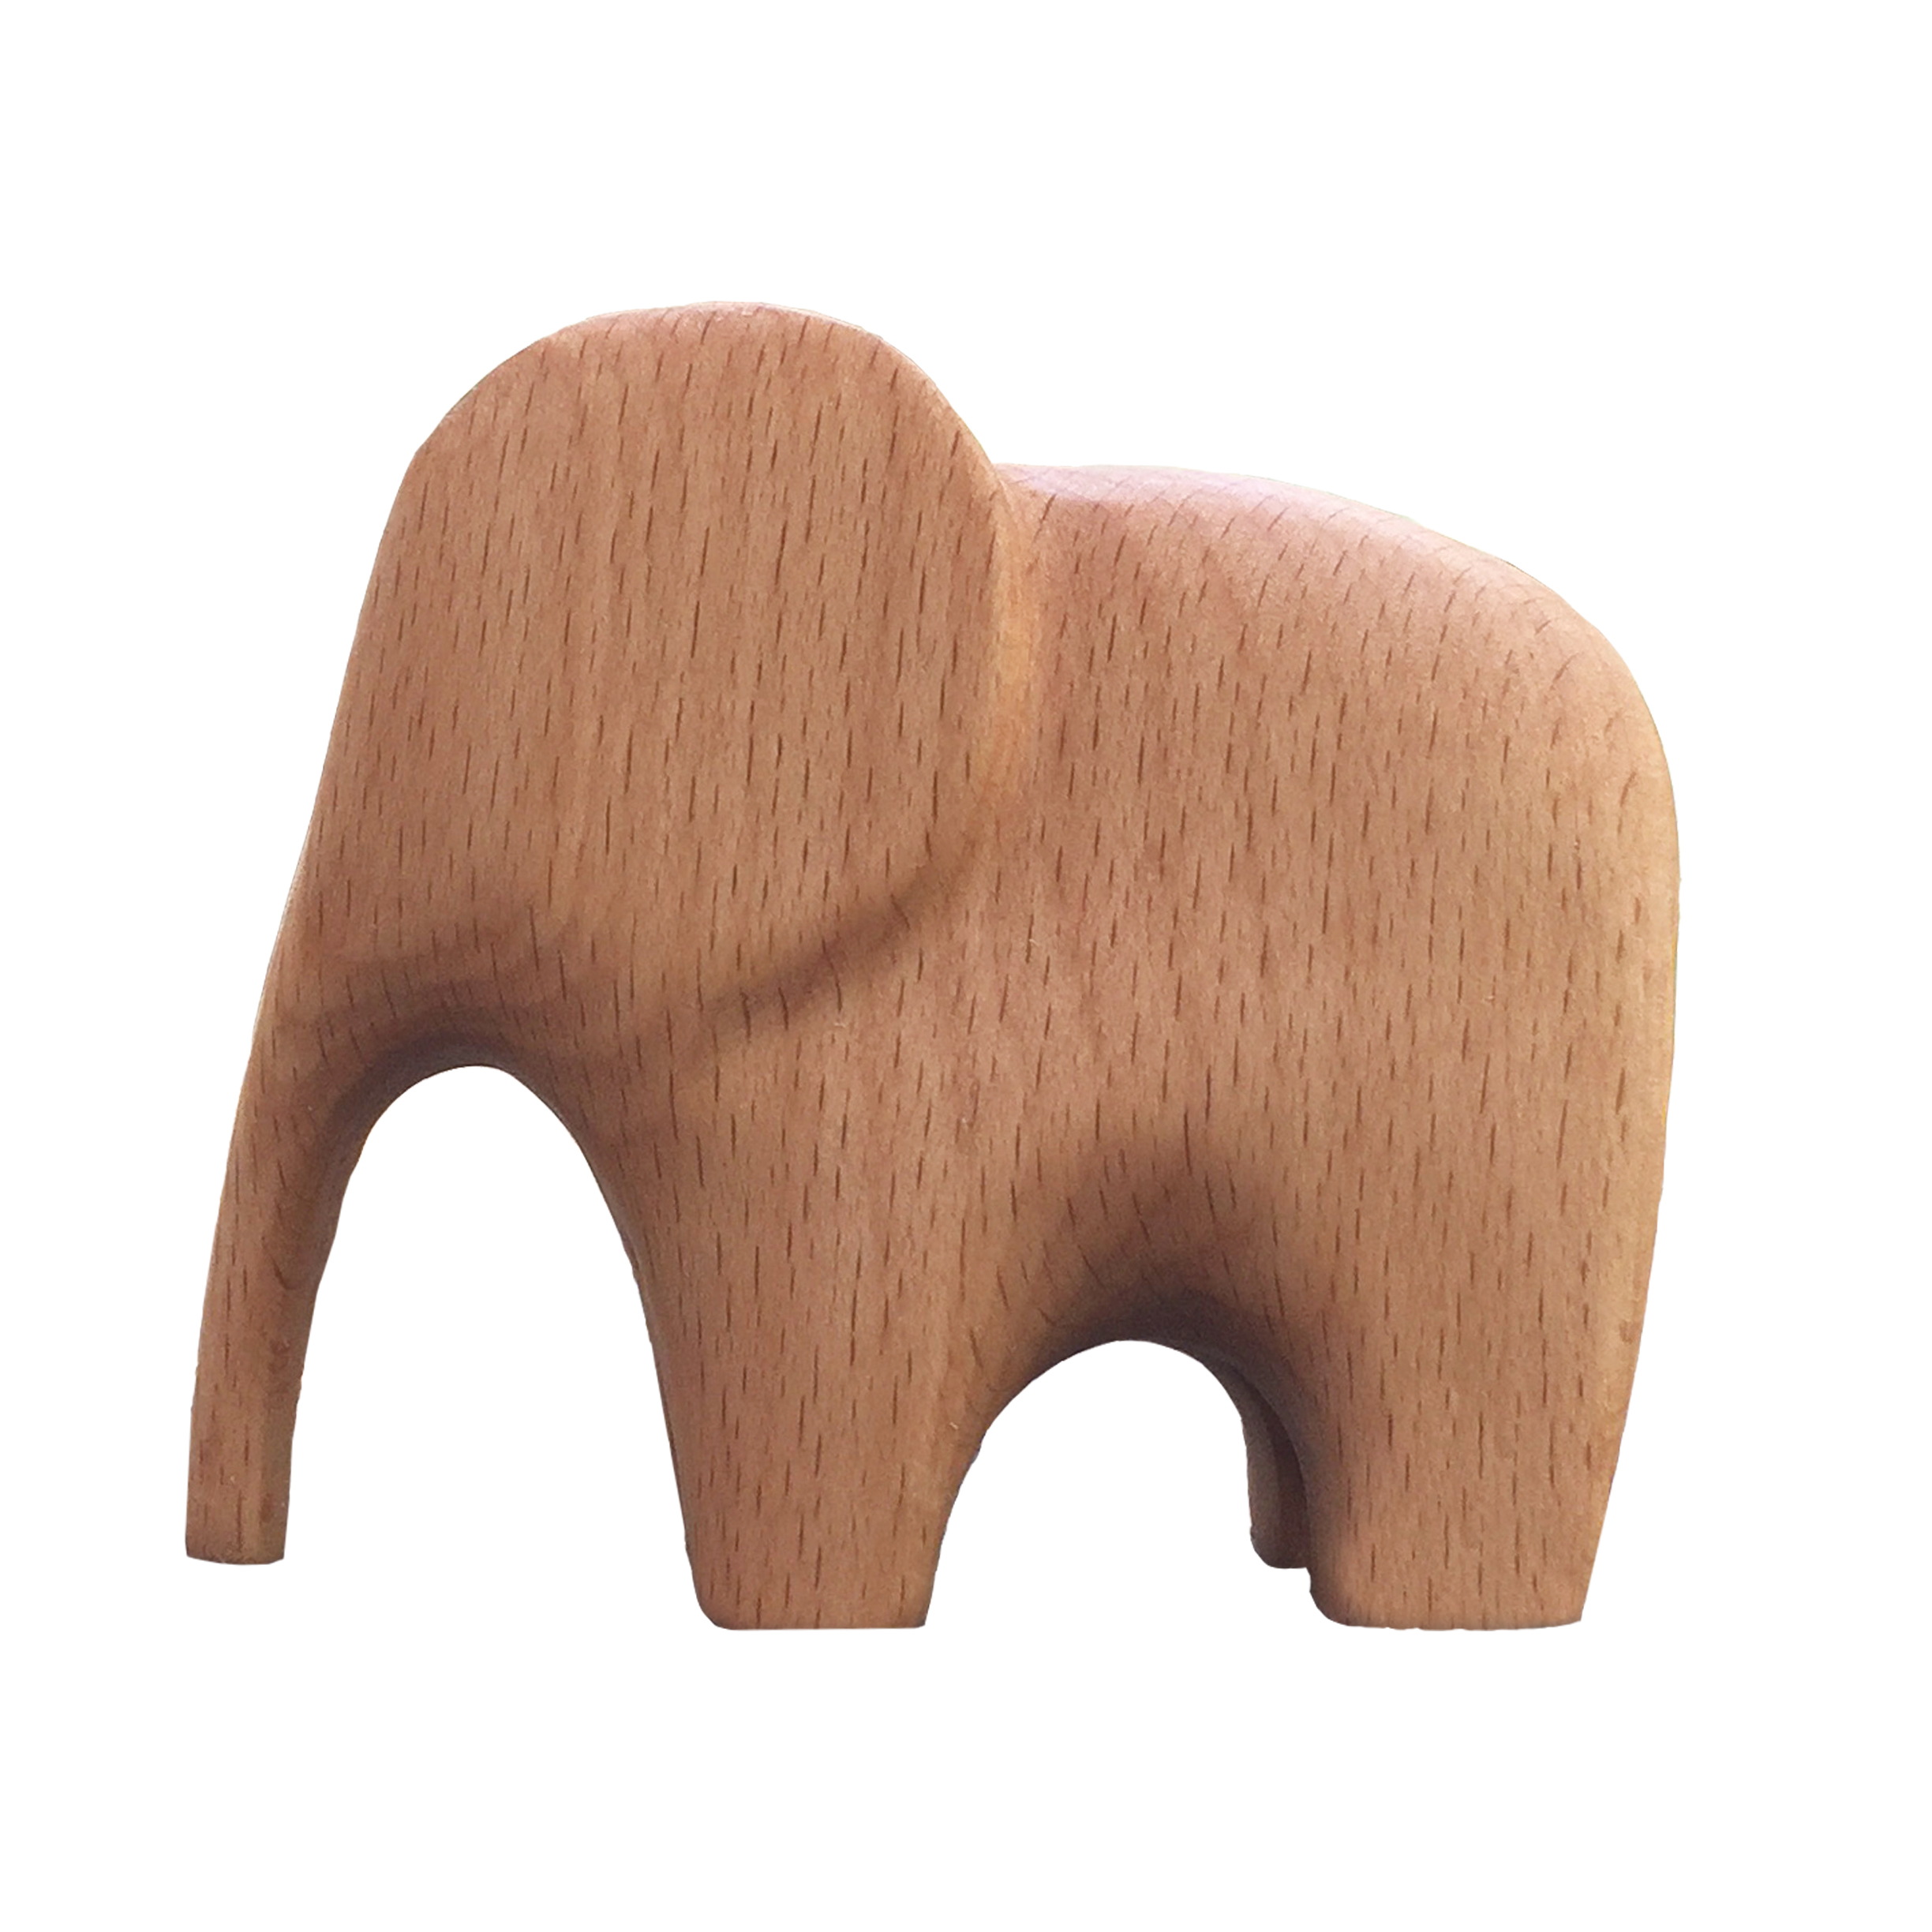 مجسمه چوبی طرح فیل کد Hill01